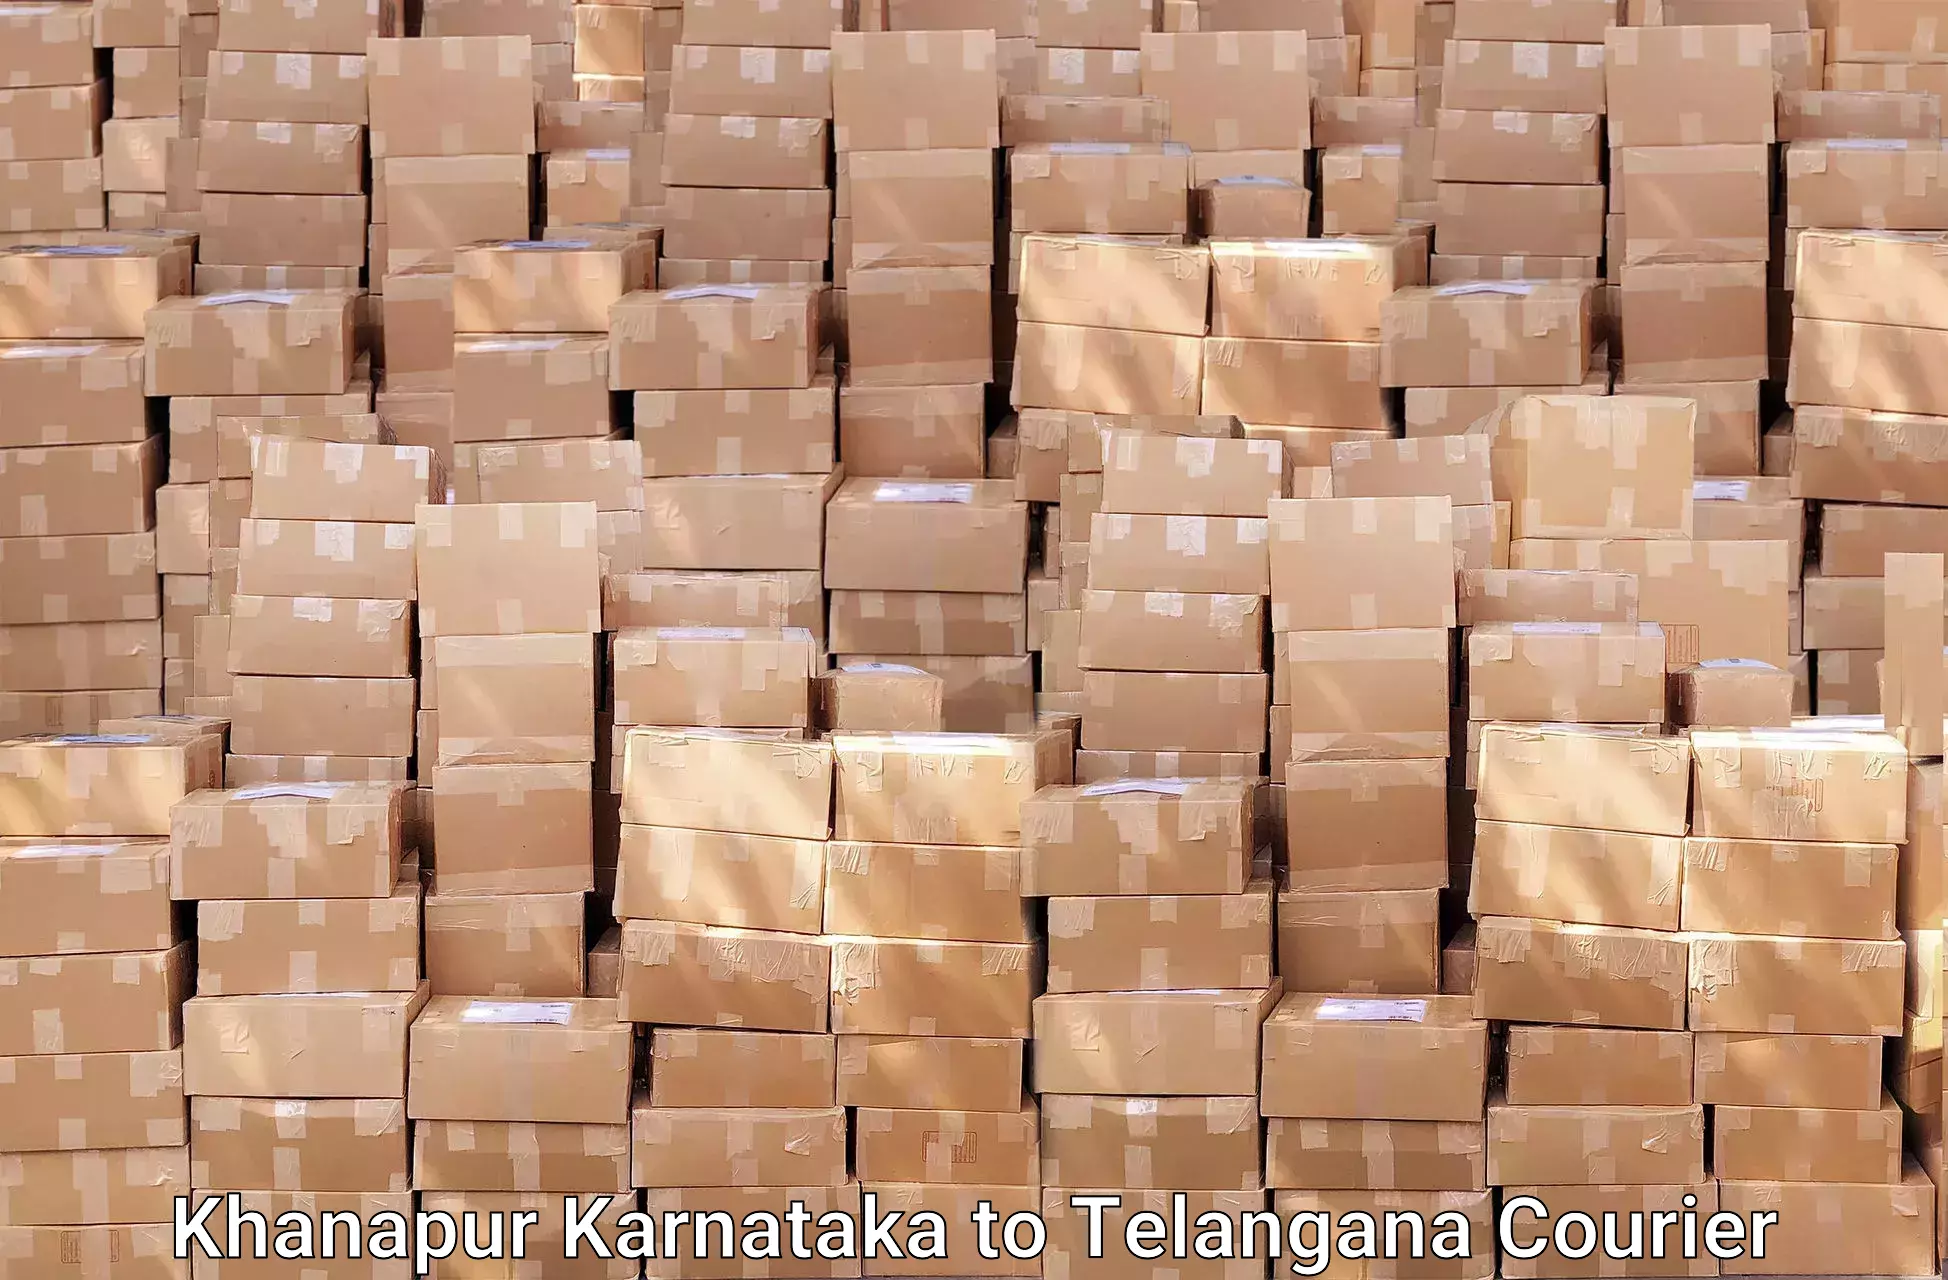 Packing and moving services Khanapur Karnataka to Nalgonda